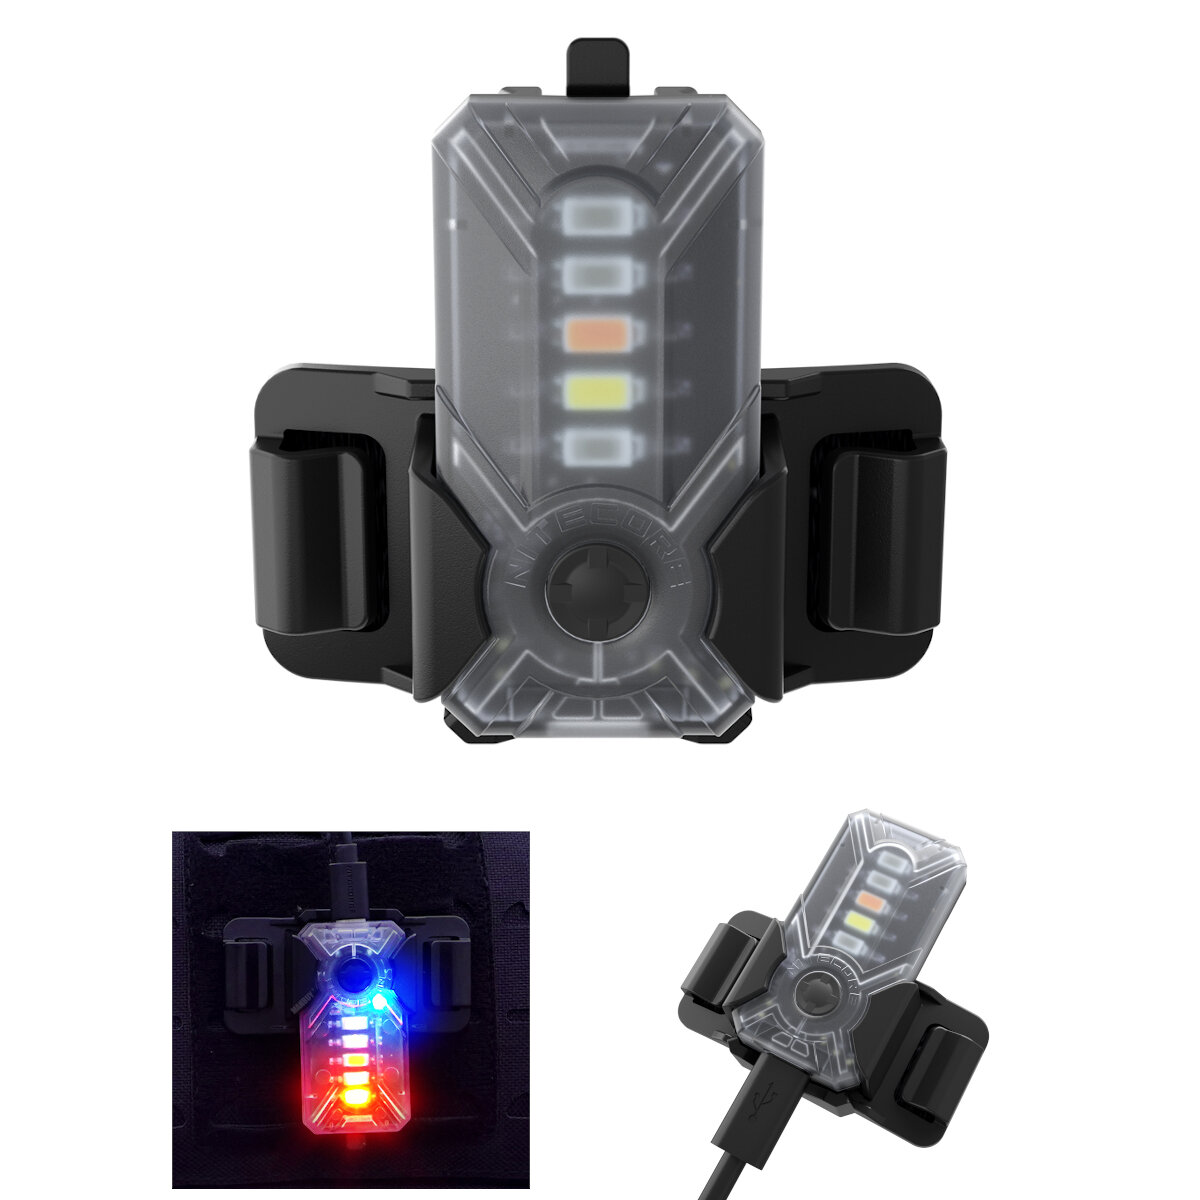 NITECORE NU07 5 colores LED Luz de señal USB recargable Casco Faro Molle Pocket Clip Light con Batería Cargador de sopor